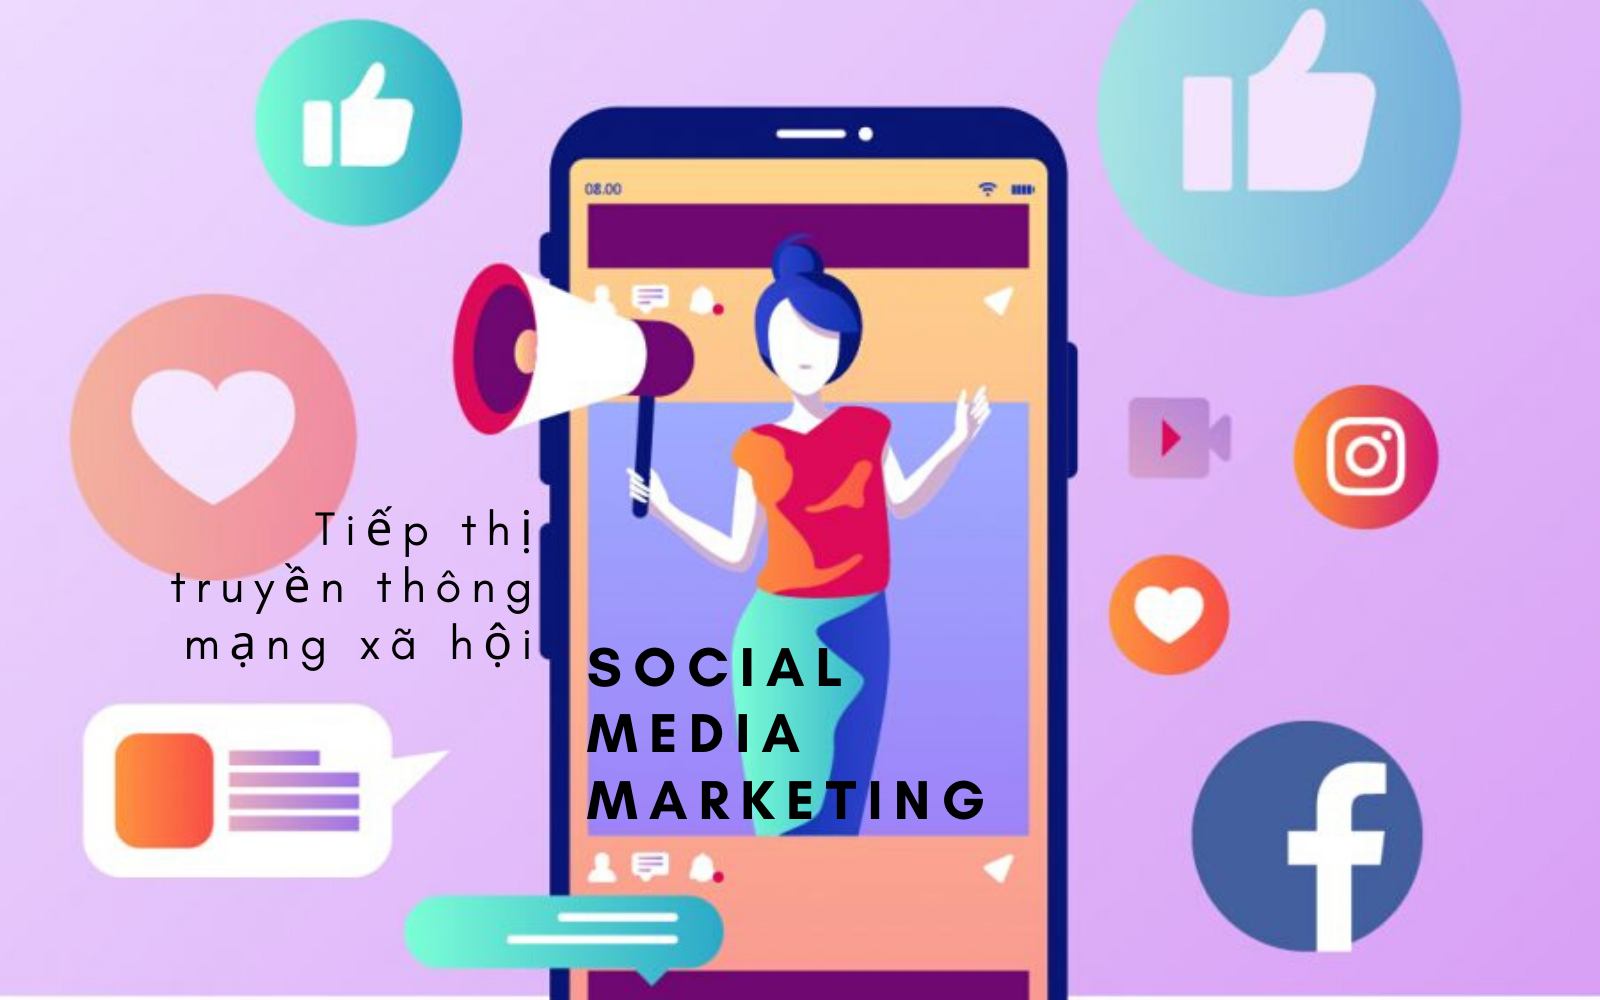 Social Media Marketing (Hình thức Marketing trên mạng xã hội)